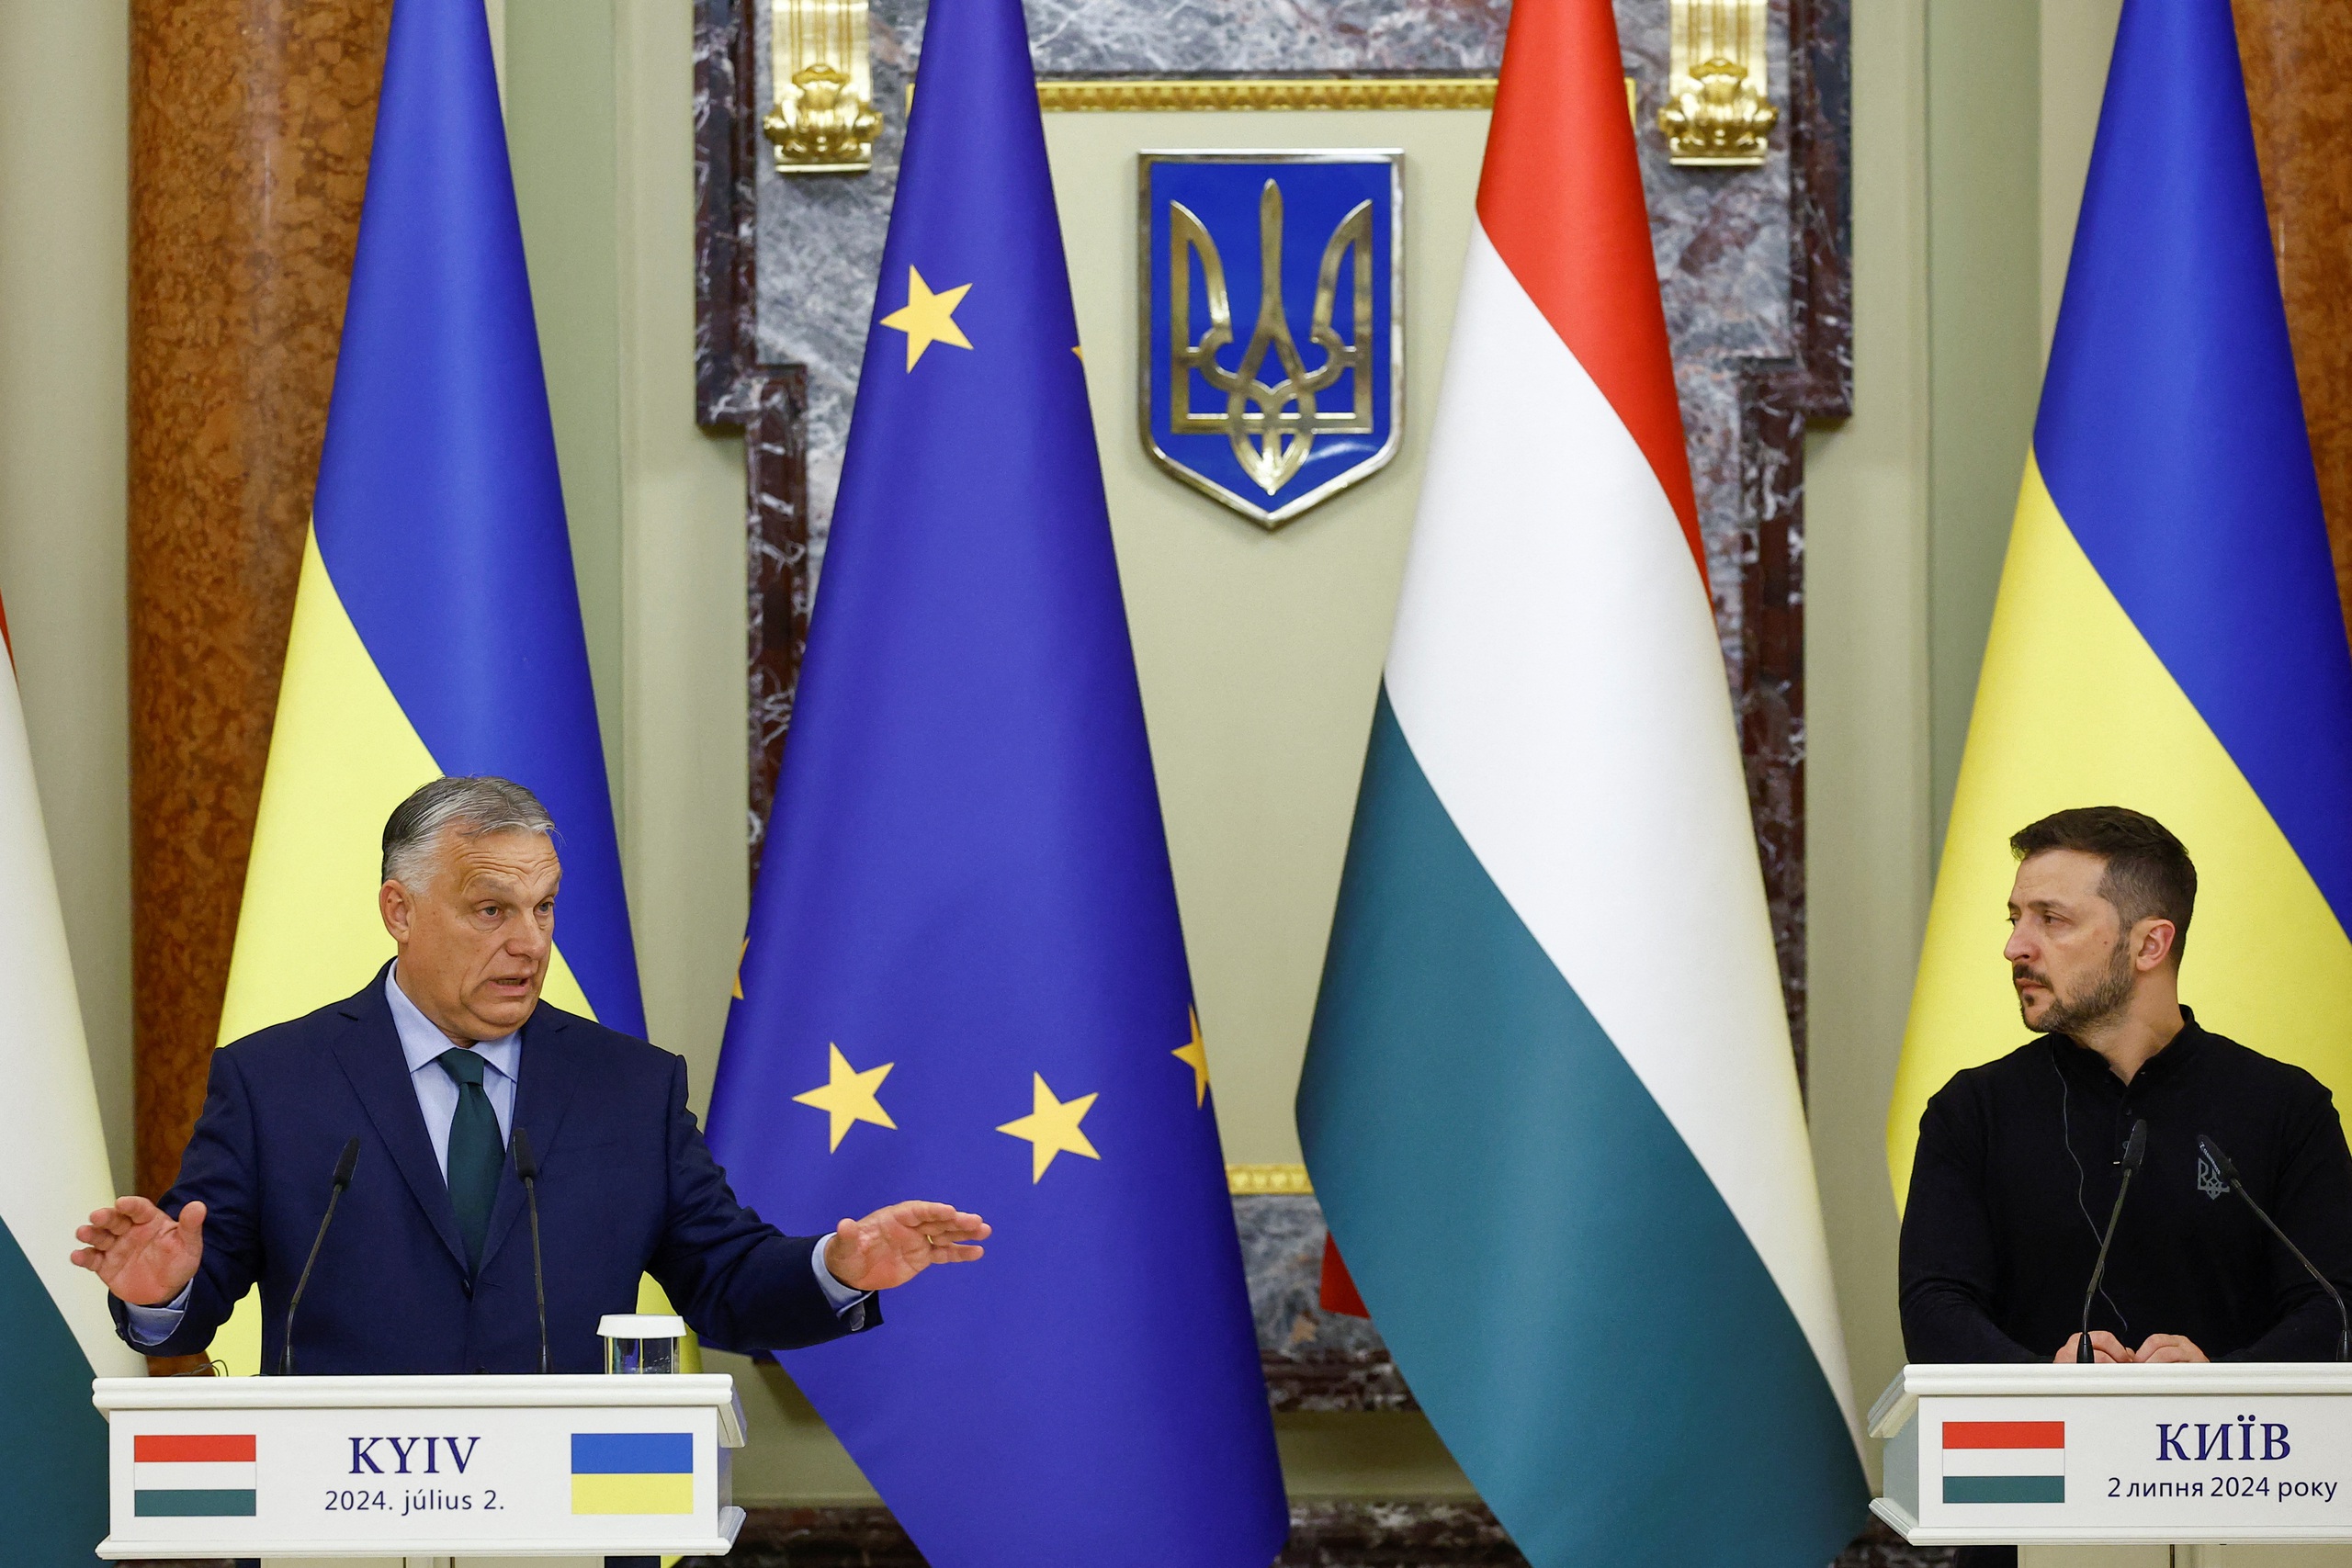 Đến Kyiv, thủ tướng Hungary đề xuất ngừng bắn để hòa đàm- Ảnh 1.